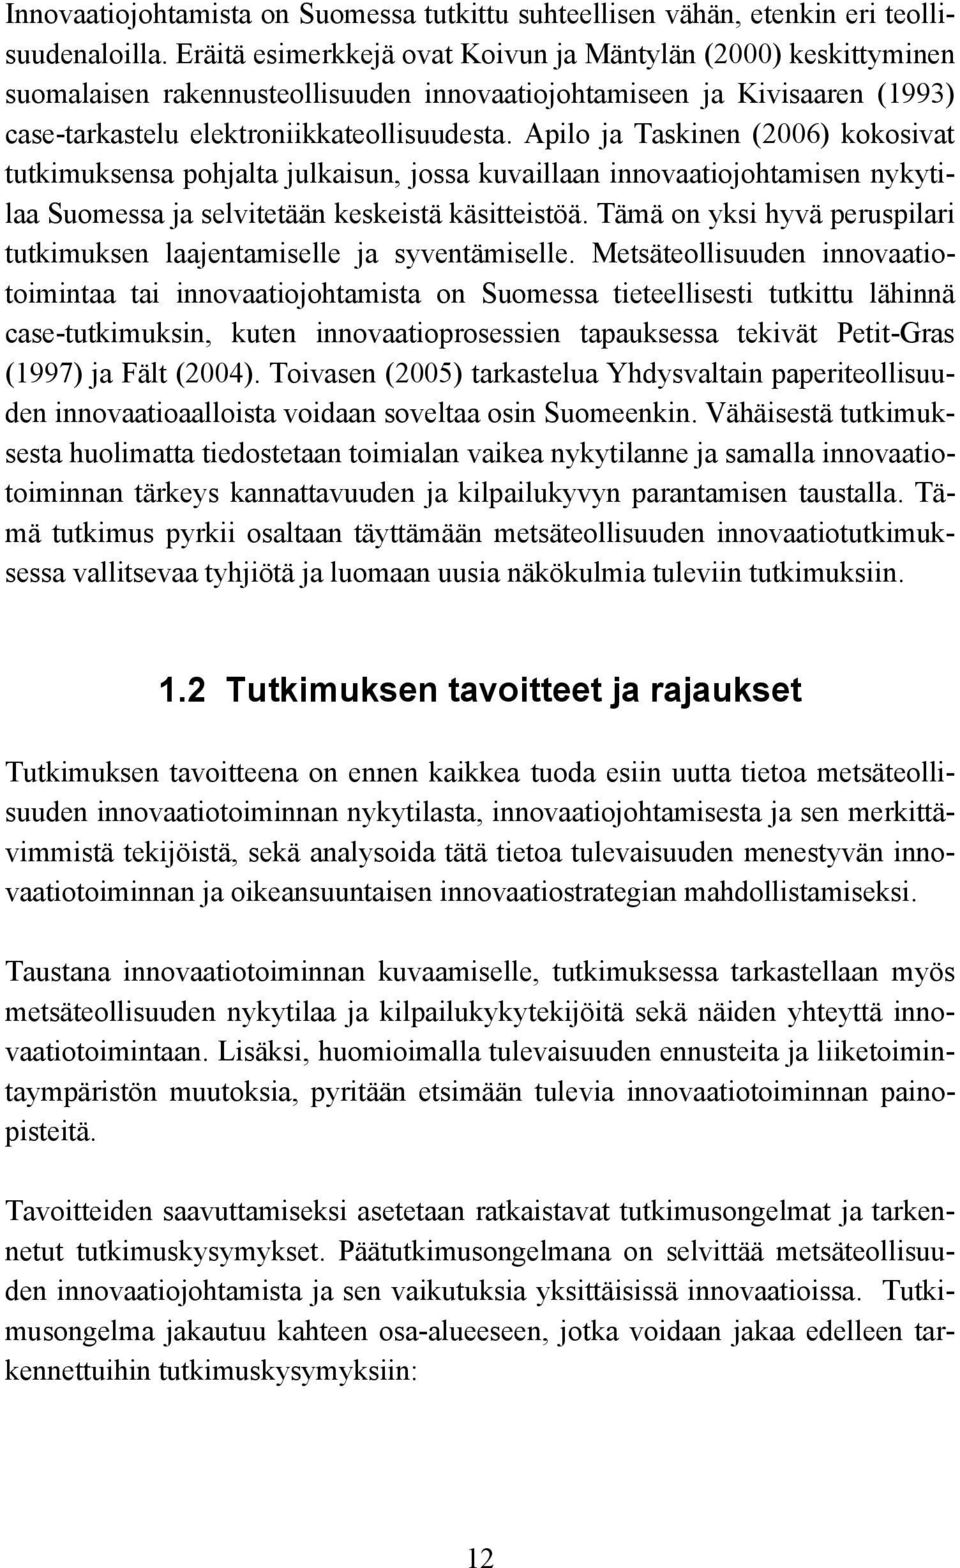 Apilo ja Taskinen (2006) kokosivat tutkimuksensa pohjalta julkaisun, jossa kuvaillaan innovaatiojohtamisen nykytilaa Suomessa ja selvitetään keskeistä käsitteistöä.